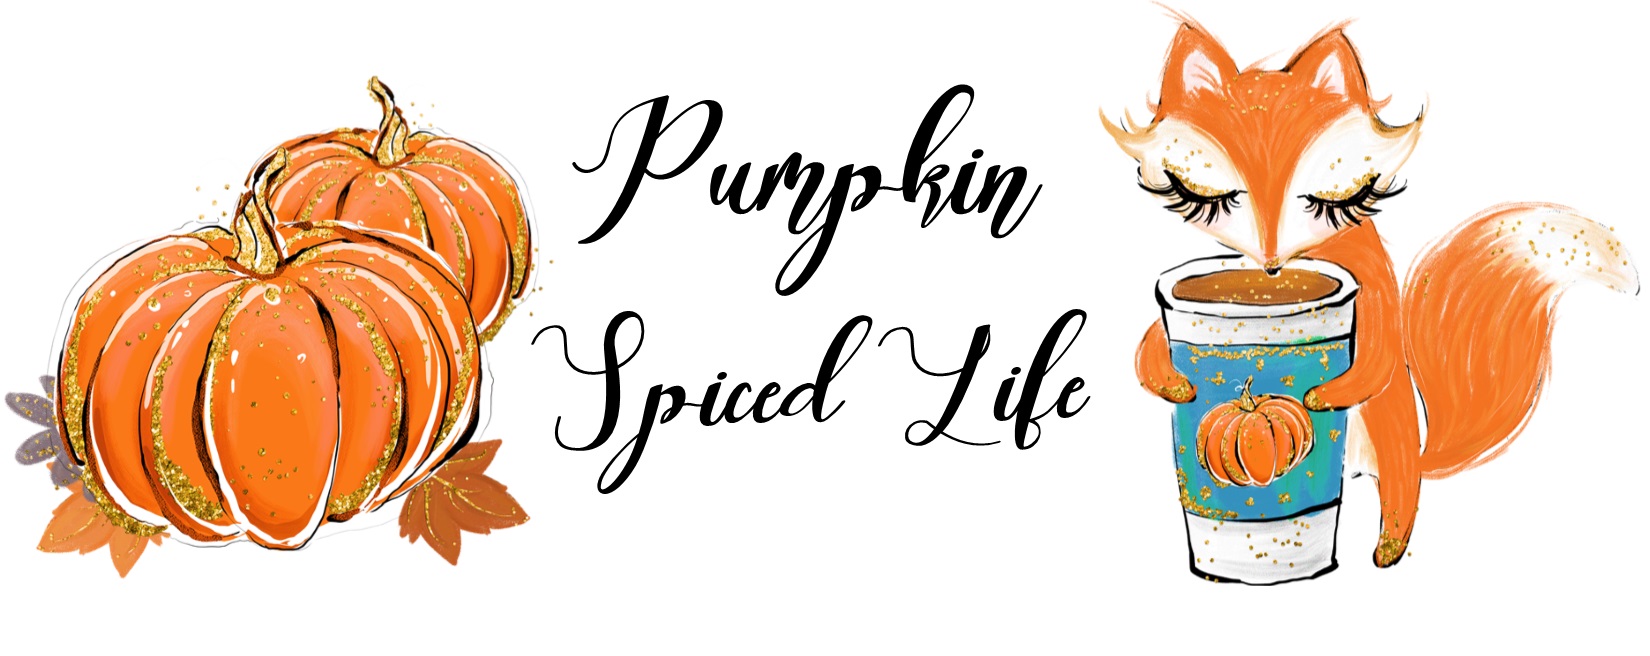 Pumpkin Spiced Life